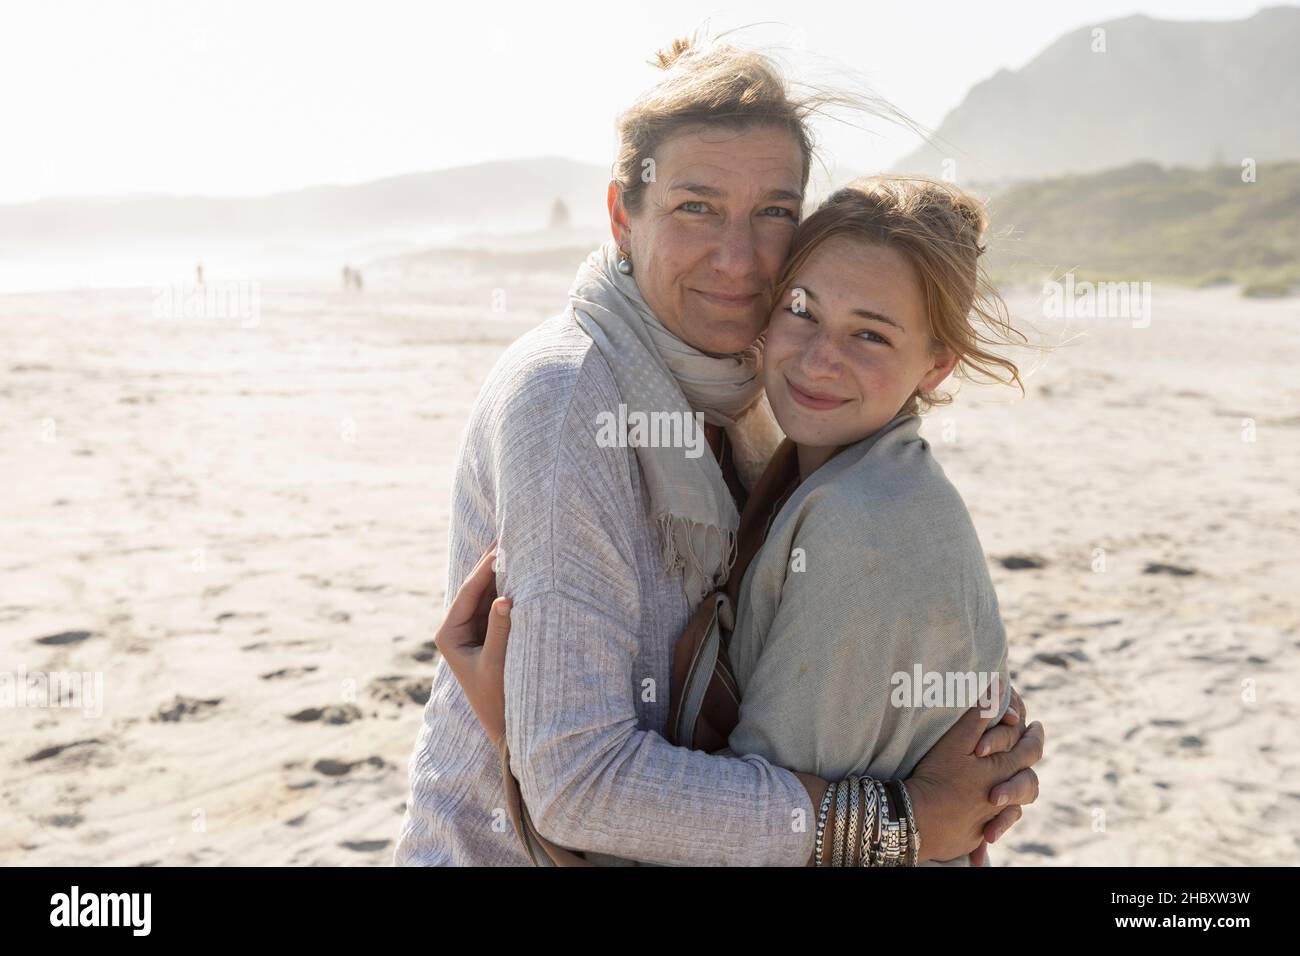 Die Erwachsene Frau und ihre Tochter im Teenageralter umarmen sich und stehen an einem windgepeitschten Strand Stockfoto